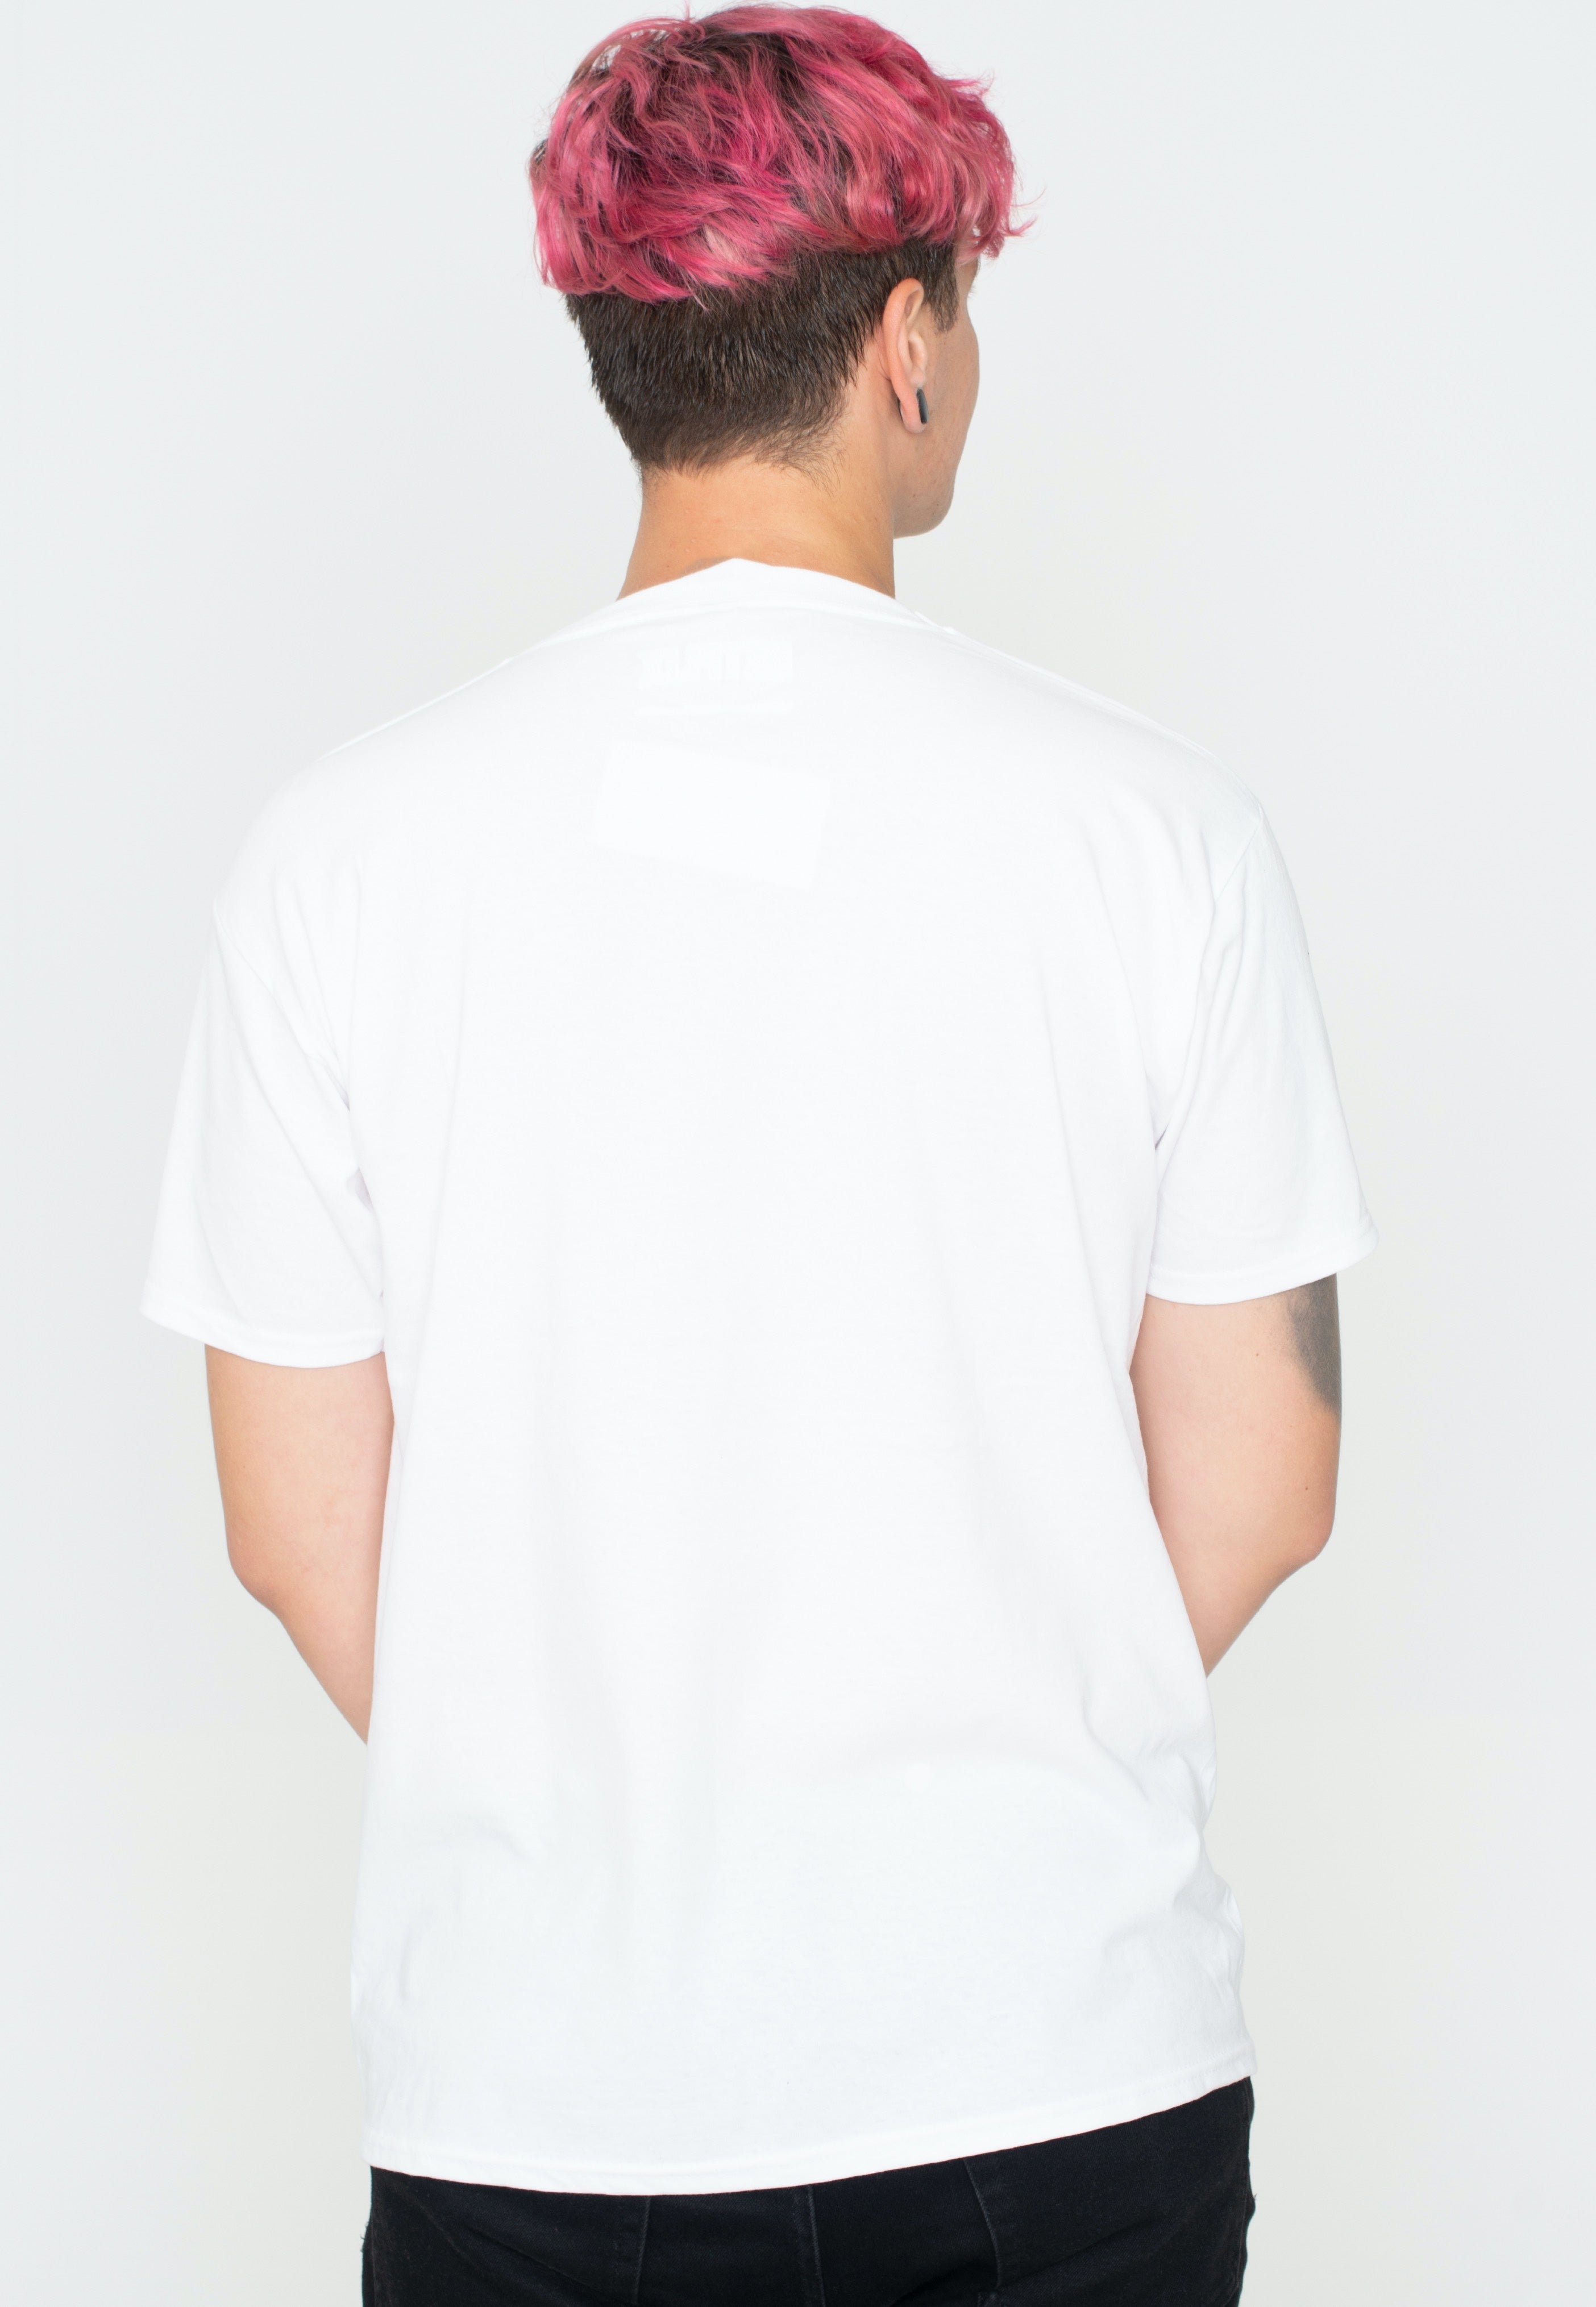 Stranger Things - Thinking Cap White - T-Shirt | Men-Image